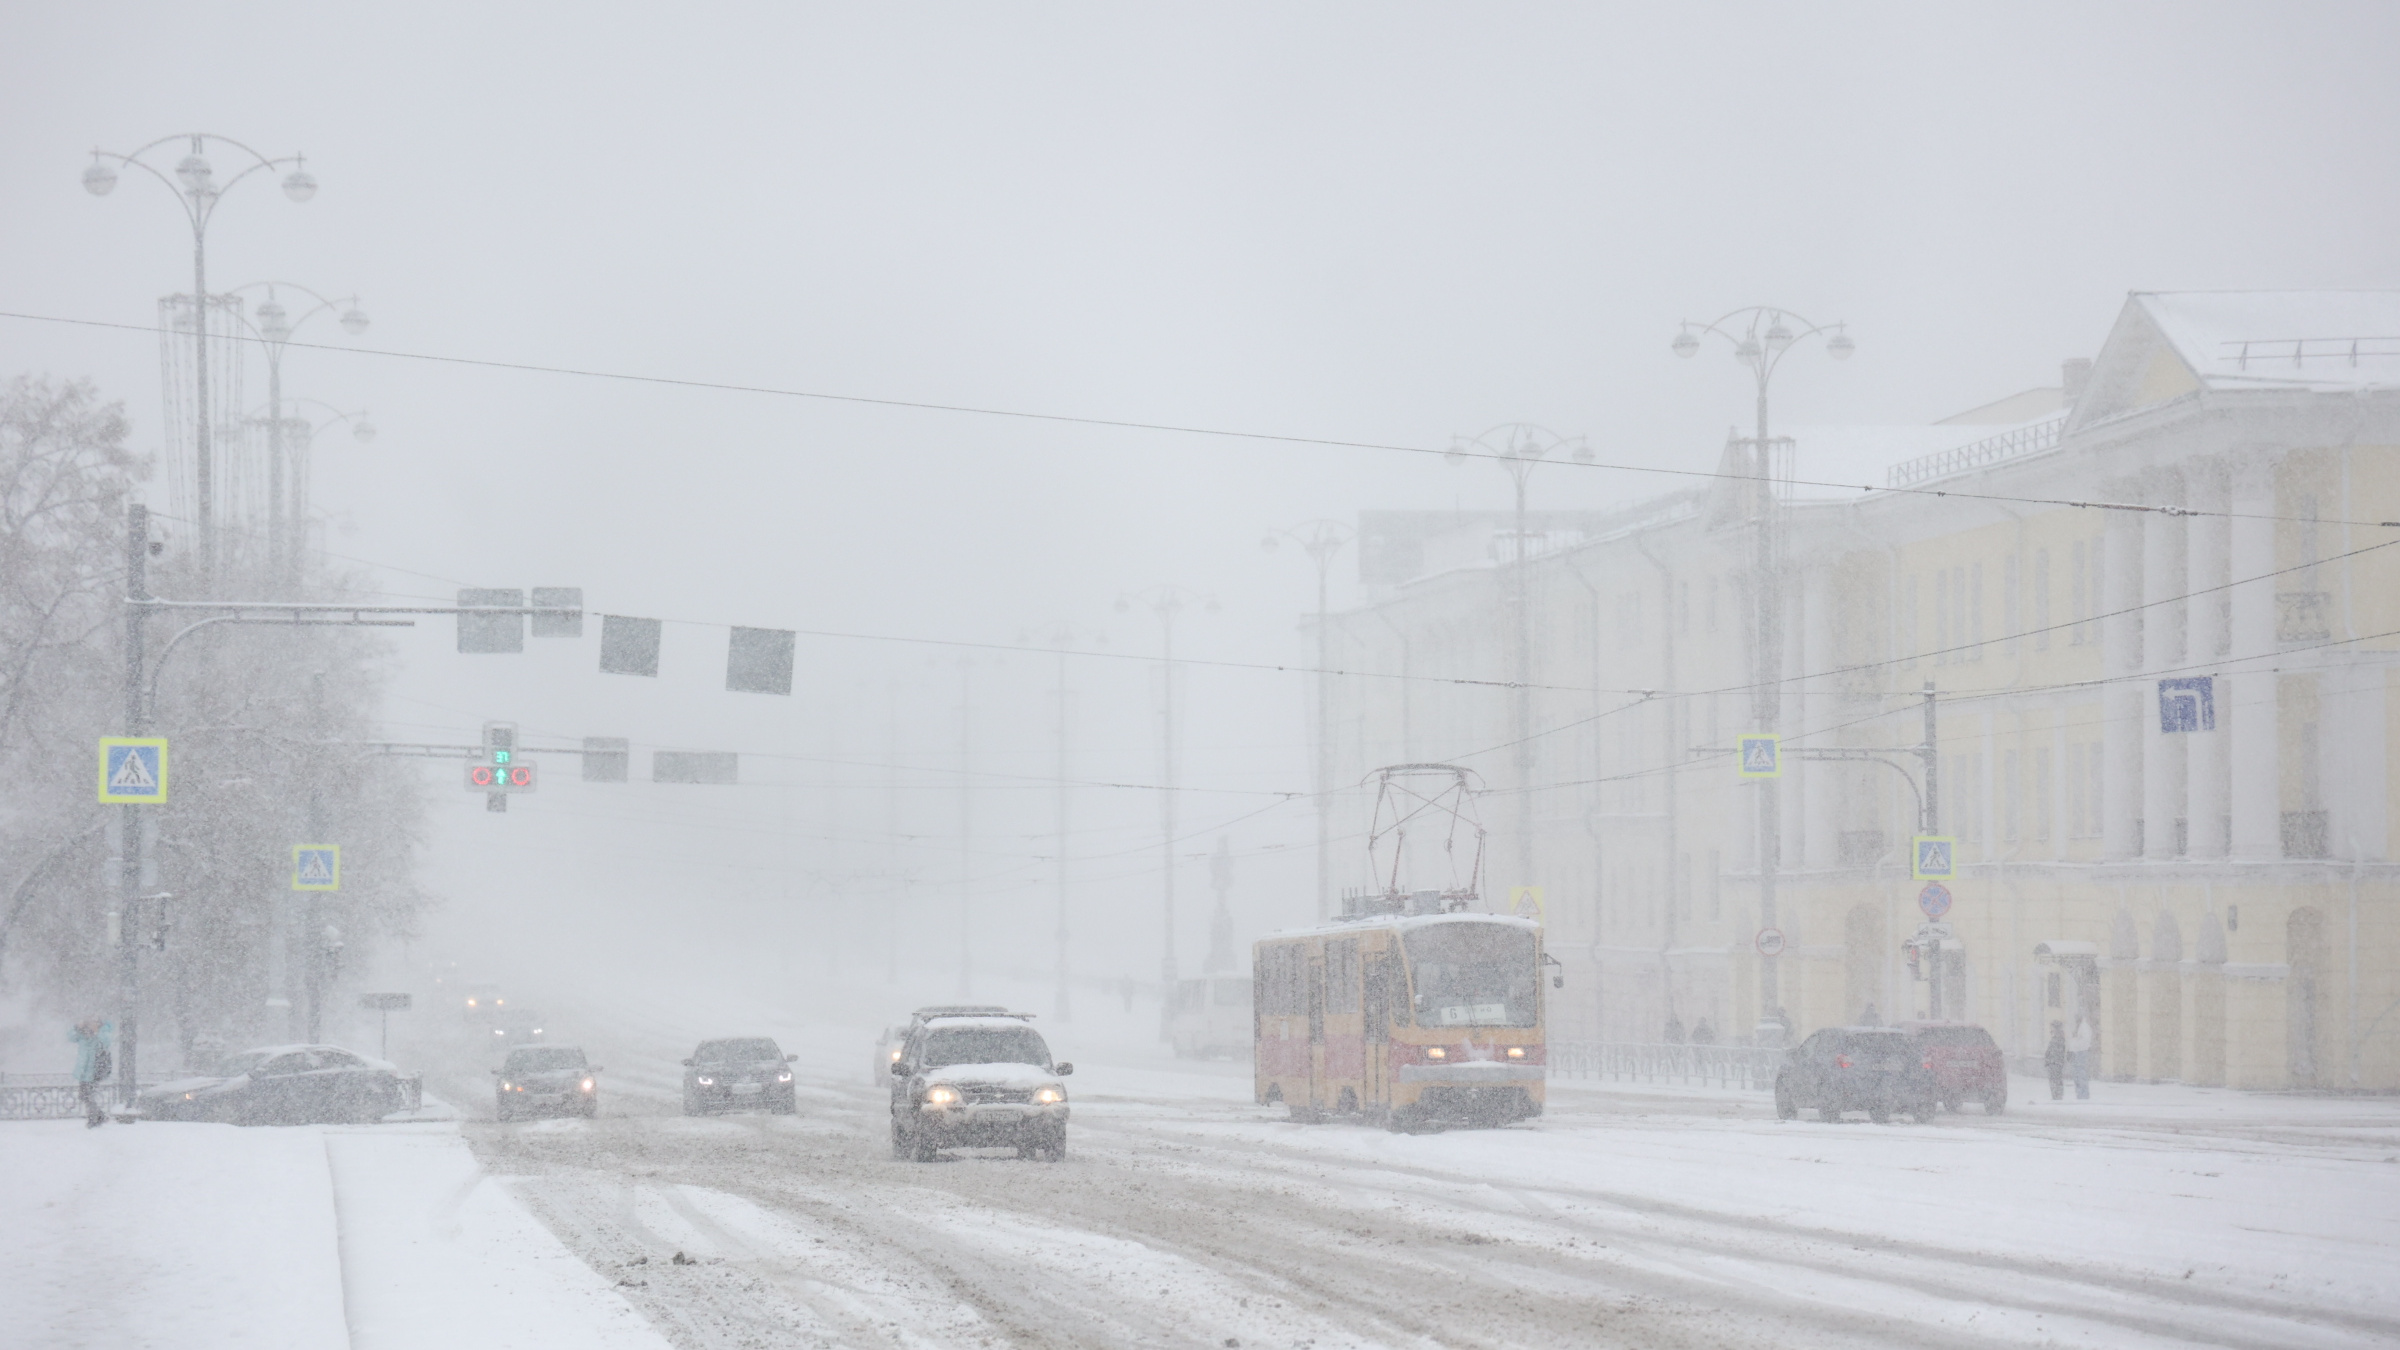 Екатеринбург замело мощным снегопадом. Вышел ли на линию общественный транспорт?